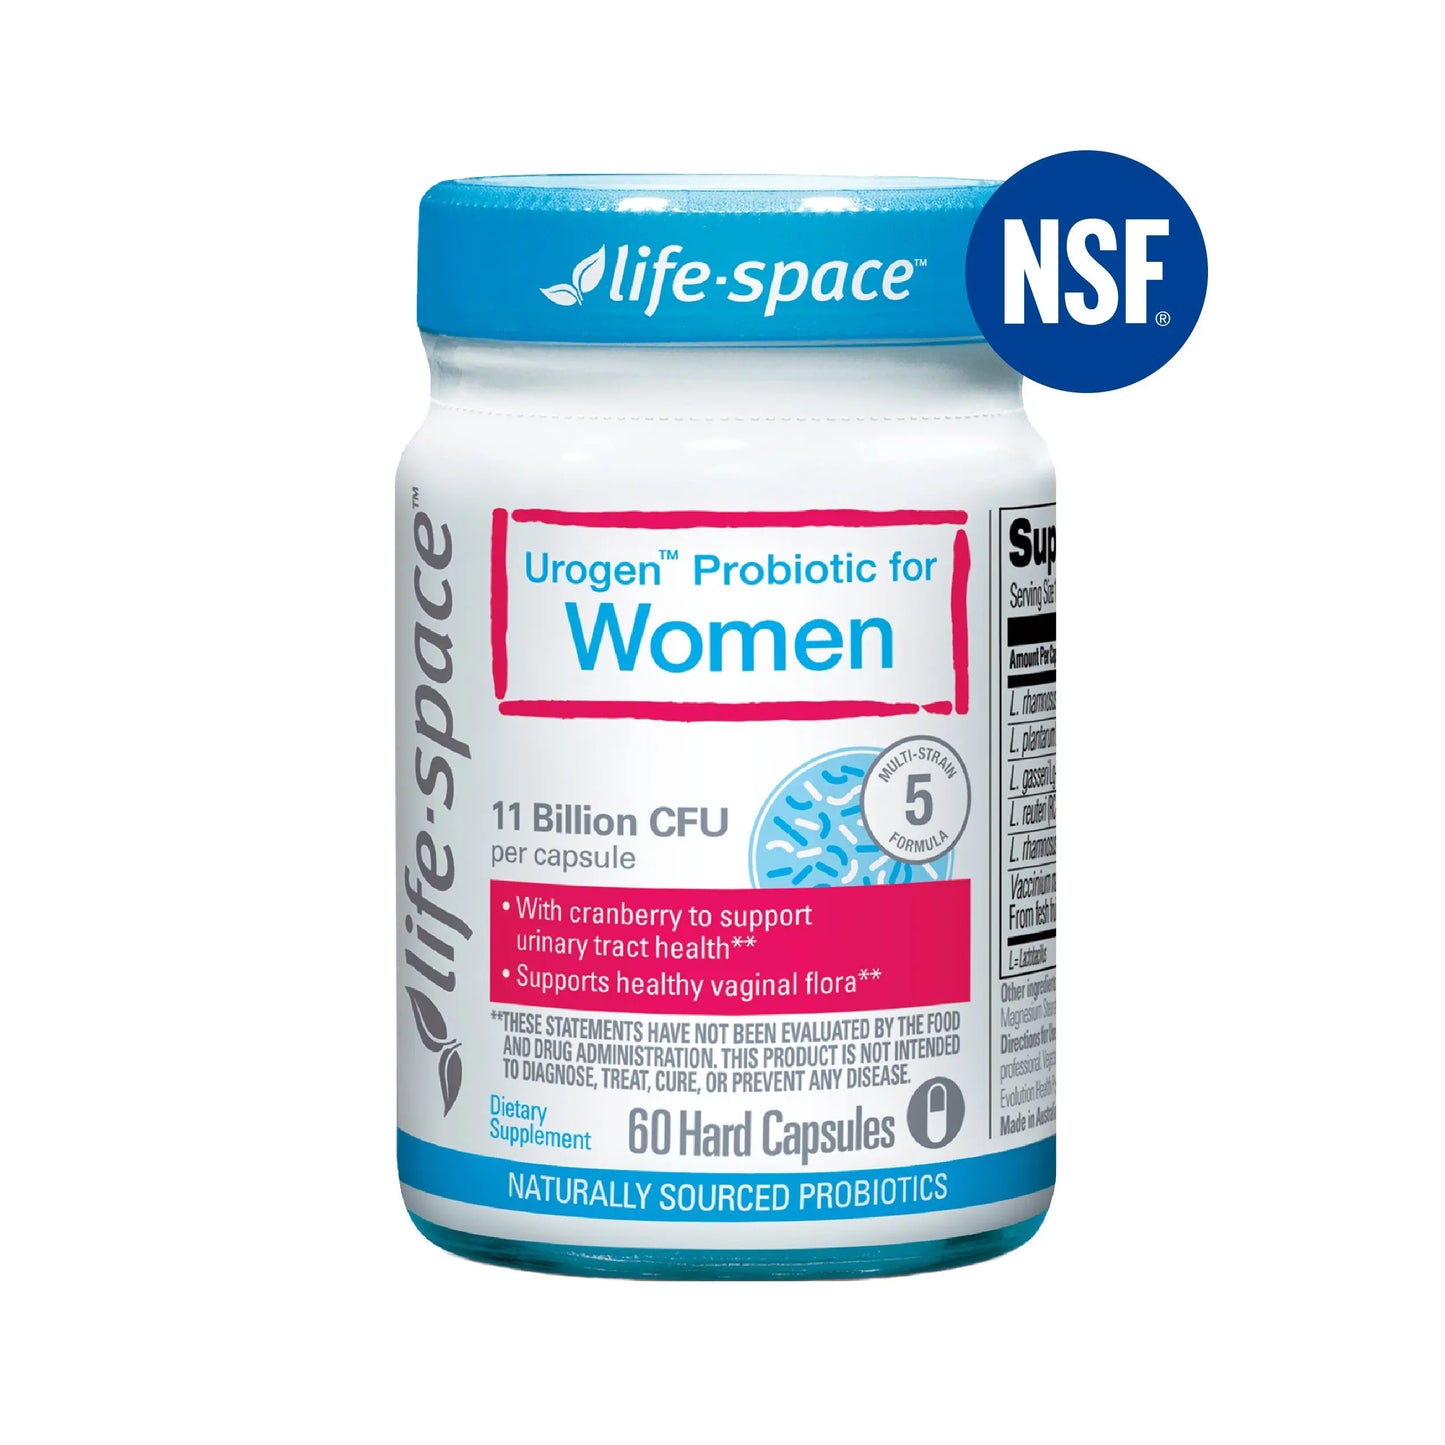 Urogen Probiotics for Women Life-Space US